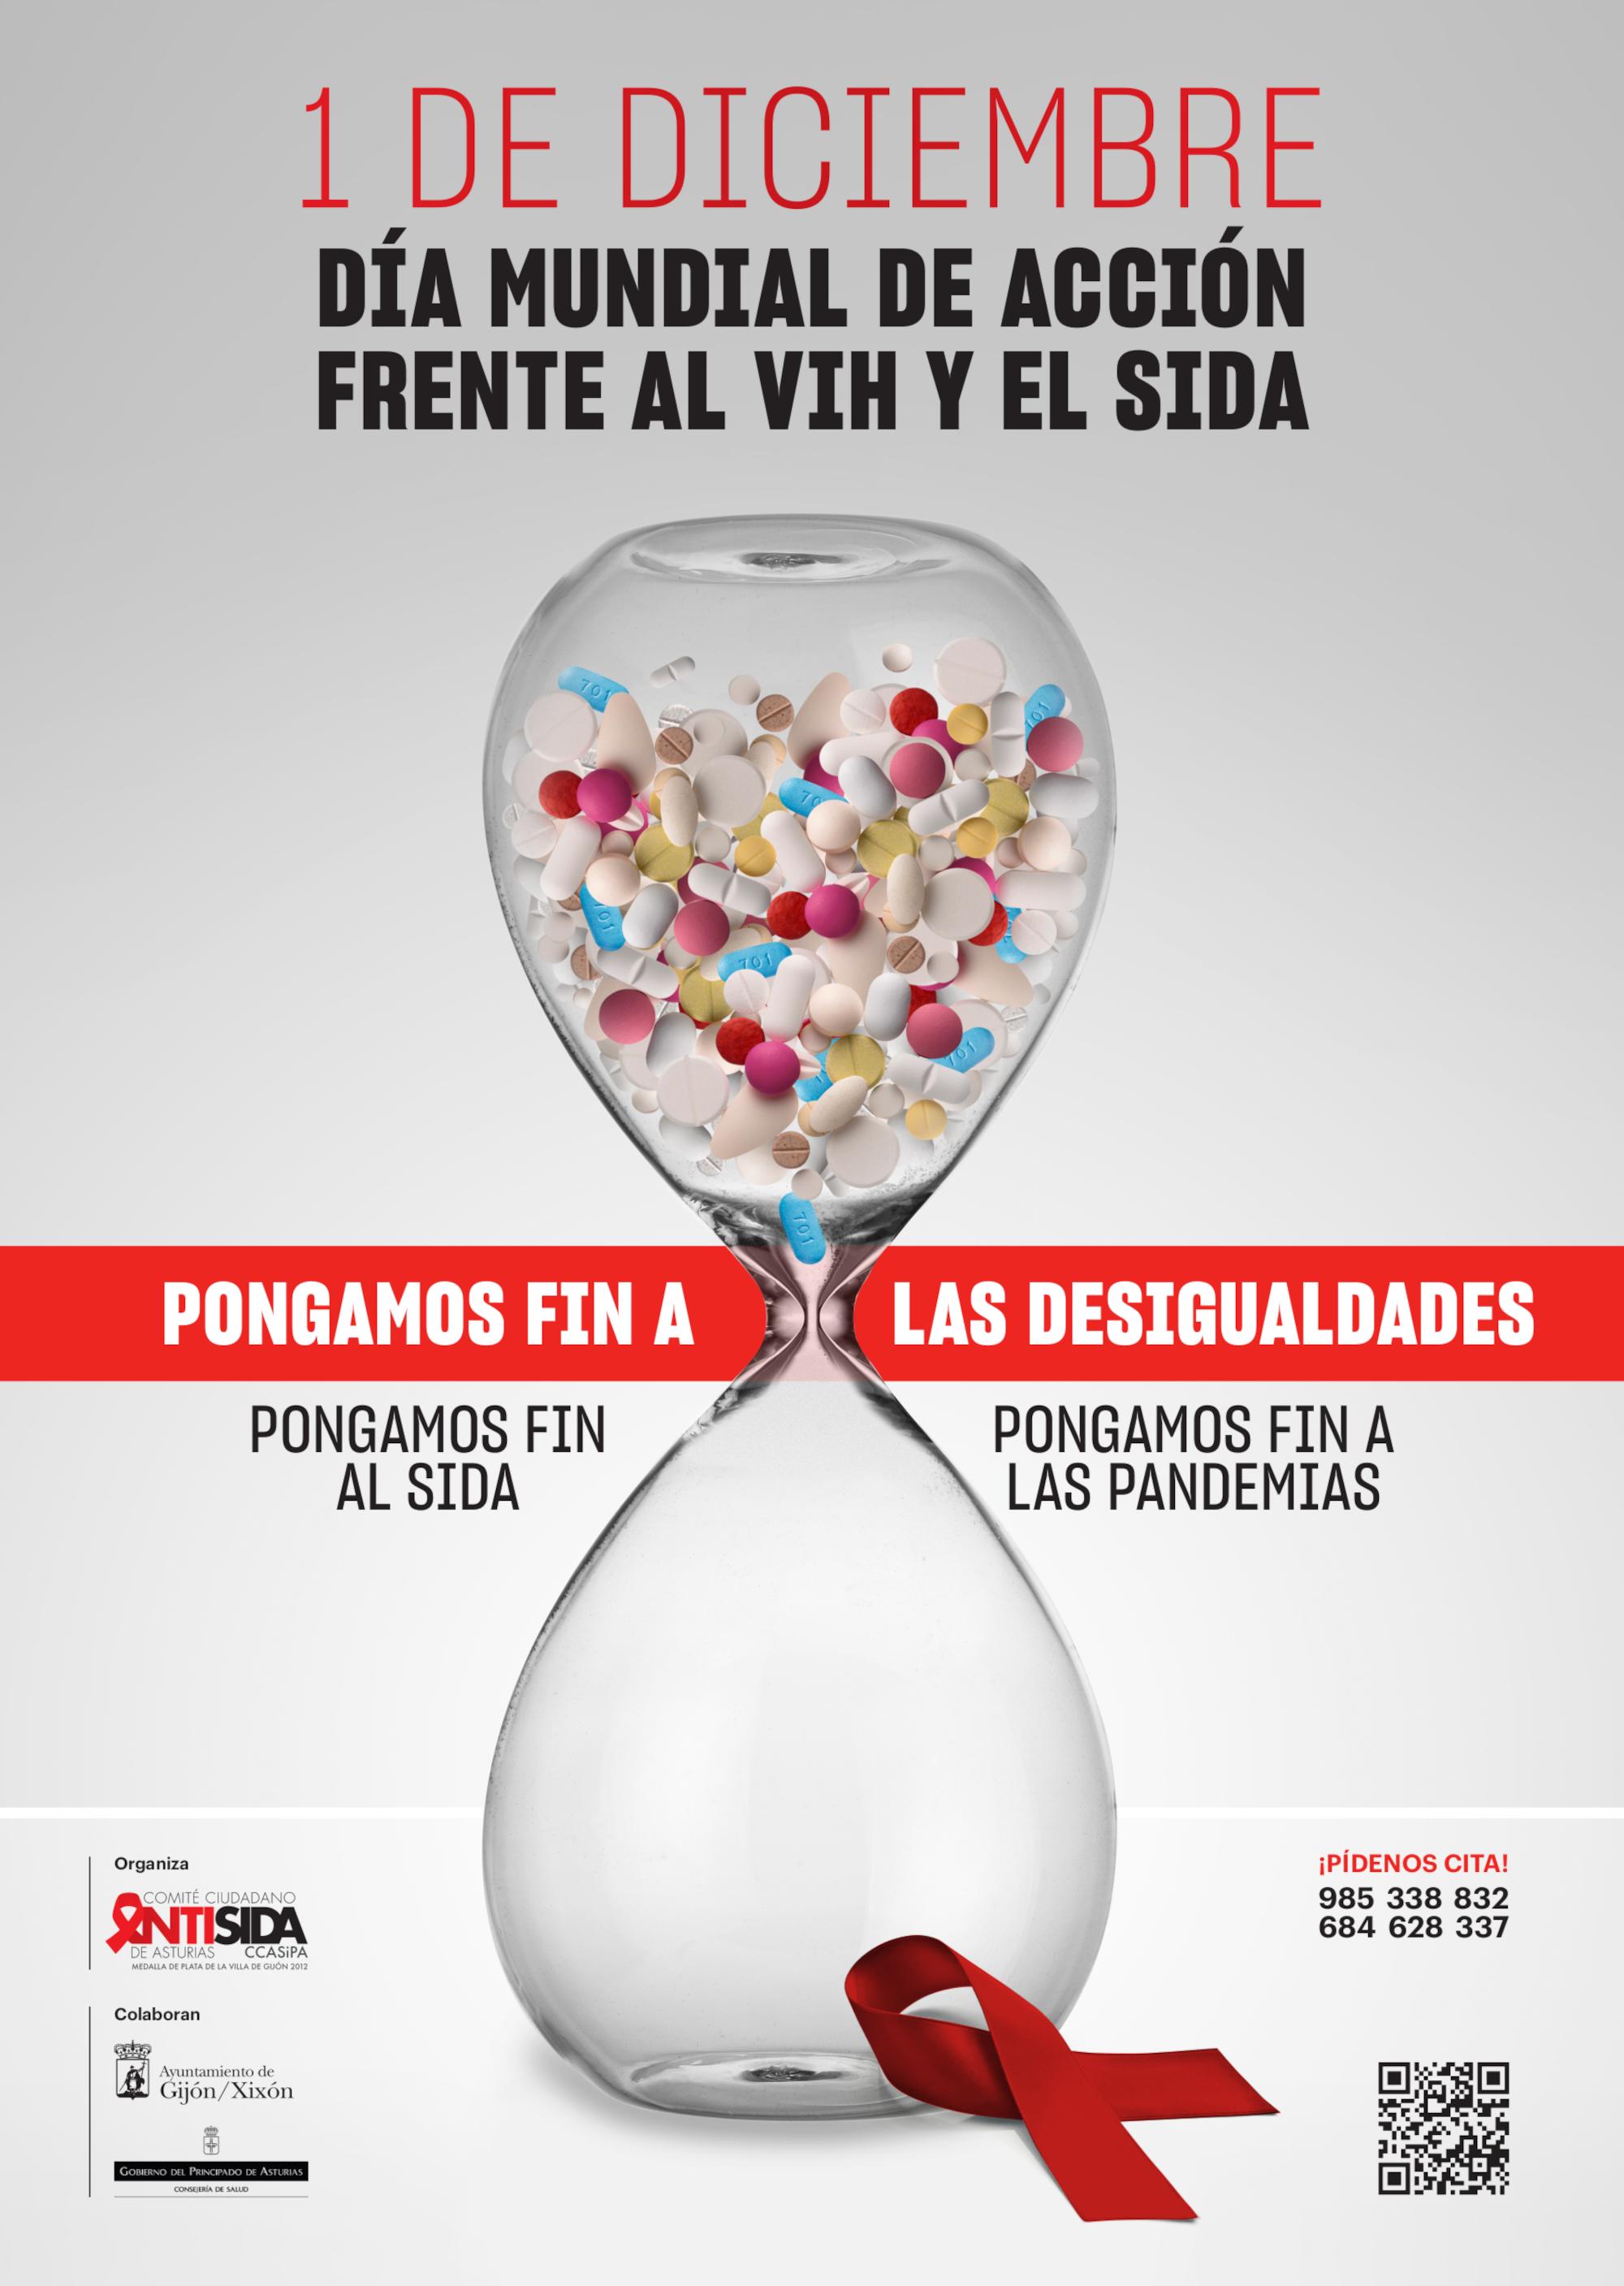 1 DE DICIEMBRE: DÍA MUNDIAL DE ACCIÓN FRENTE AL VIH Y EL SIDA